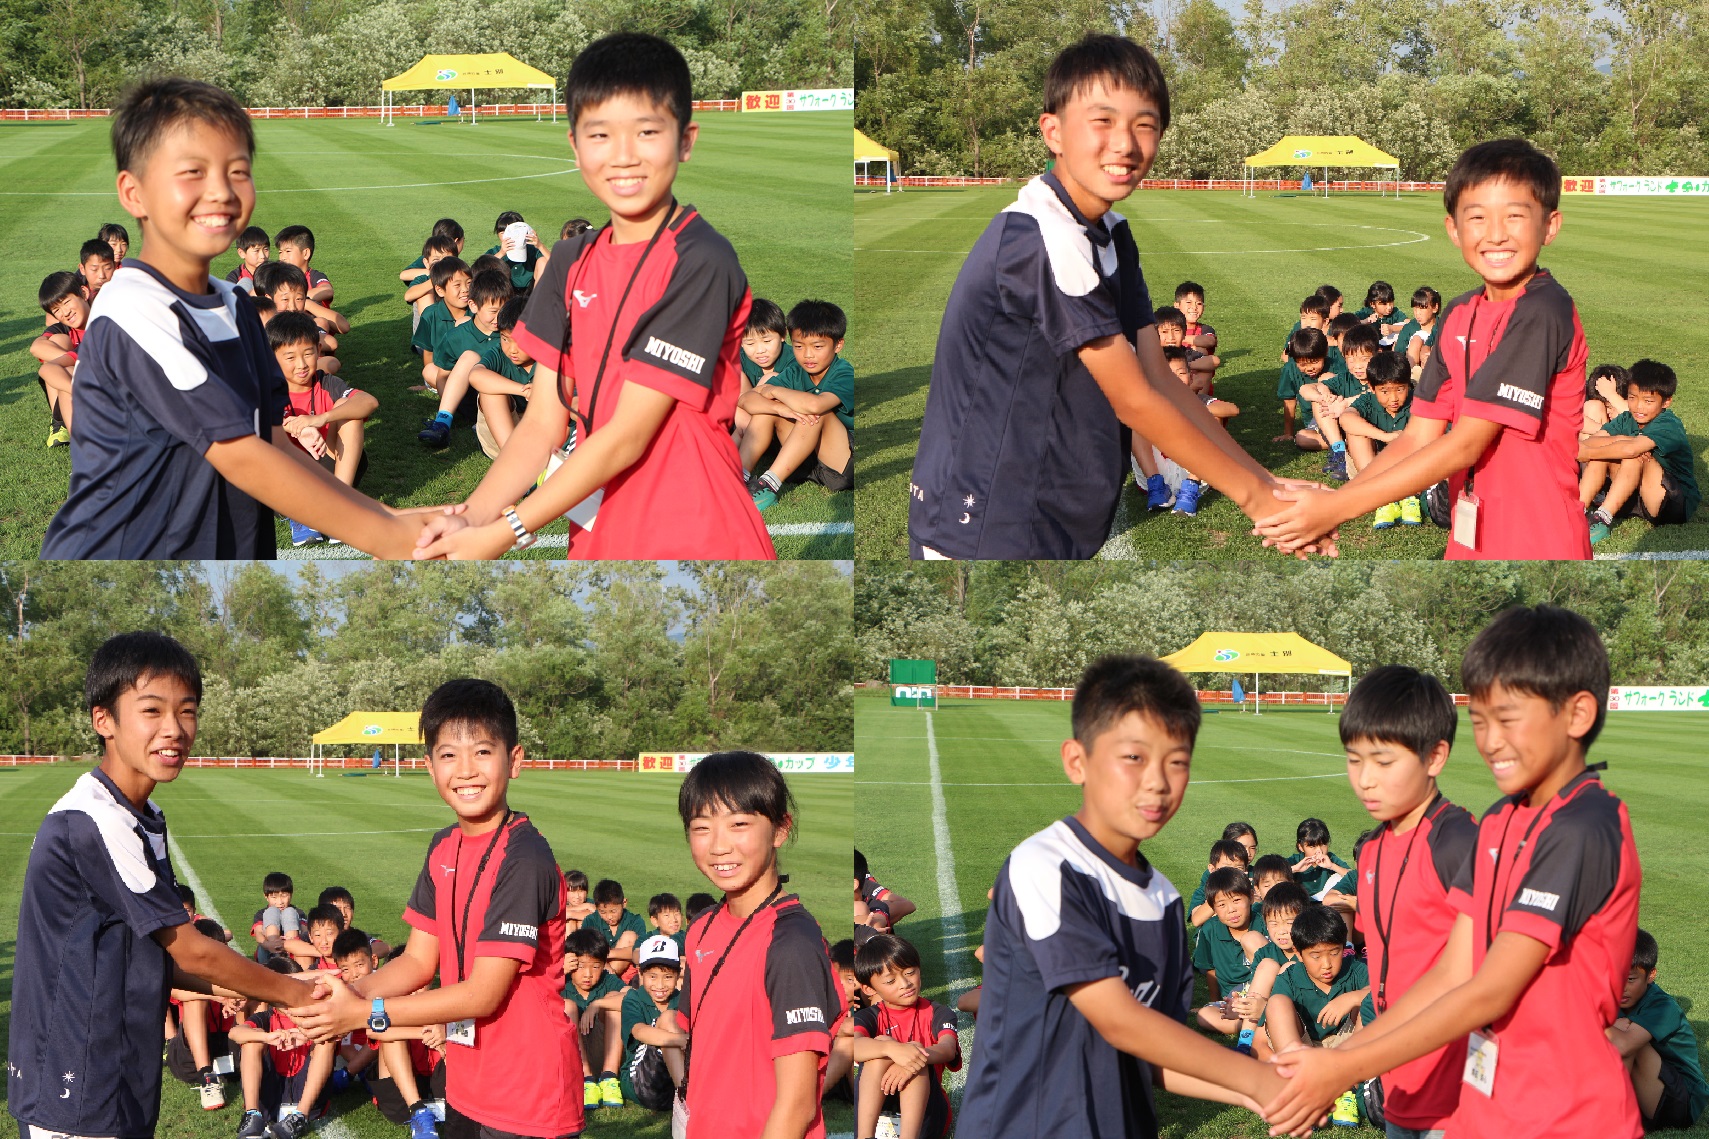 サッカー受入にてユニフォームを着た士別市とみよし市の子供たちが握手を交わしている4枚の写真